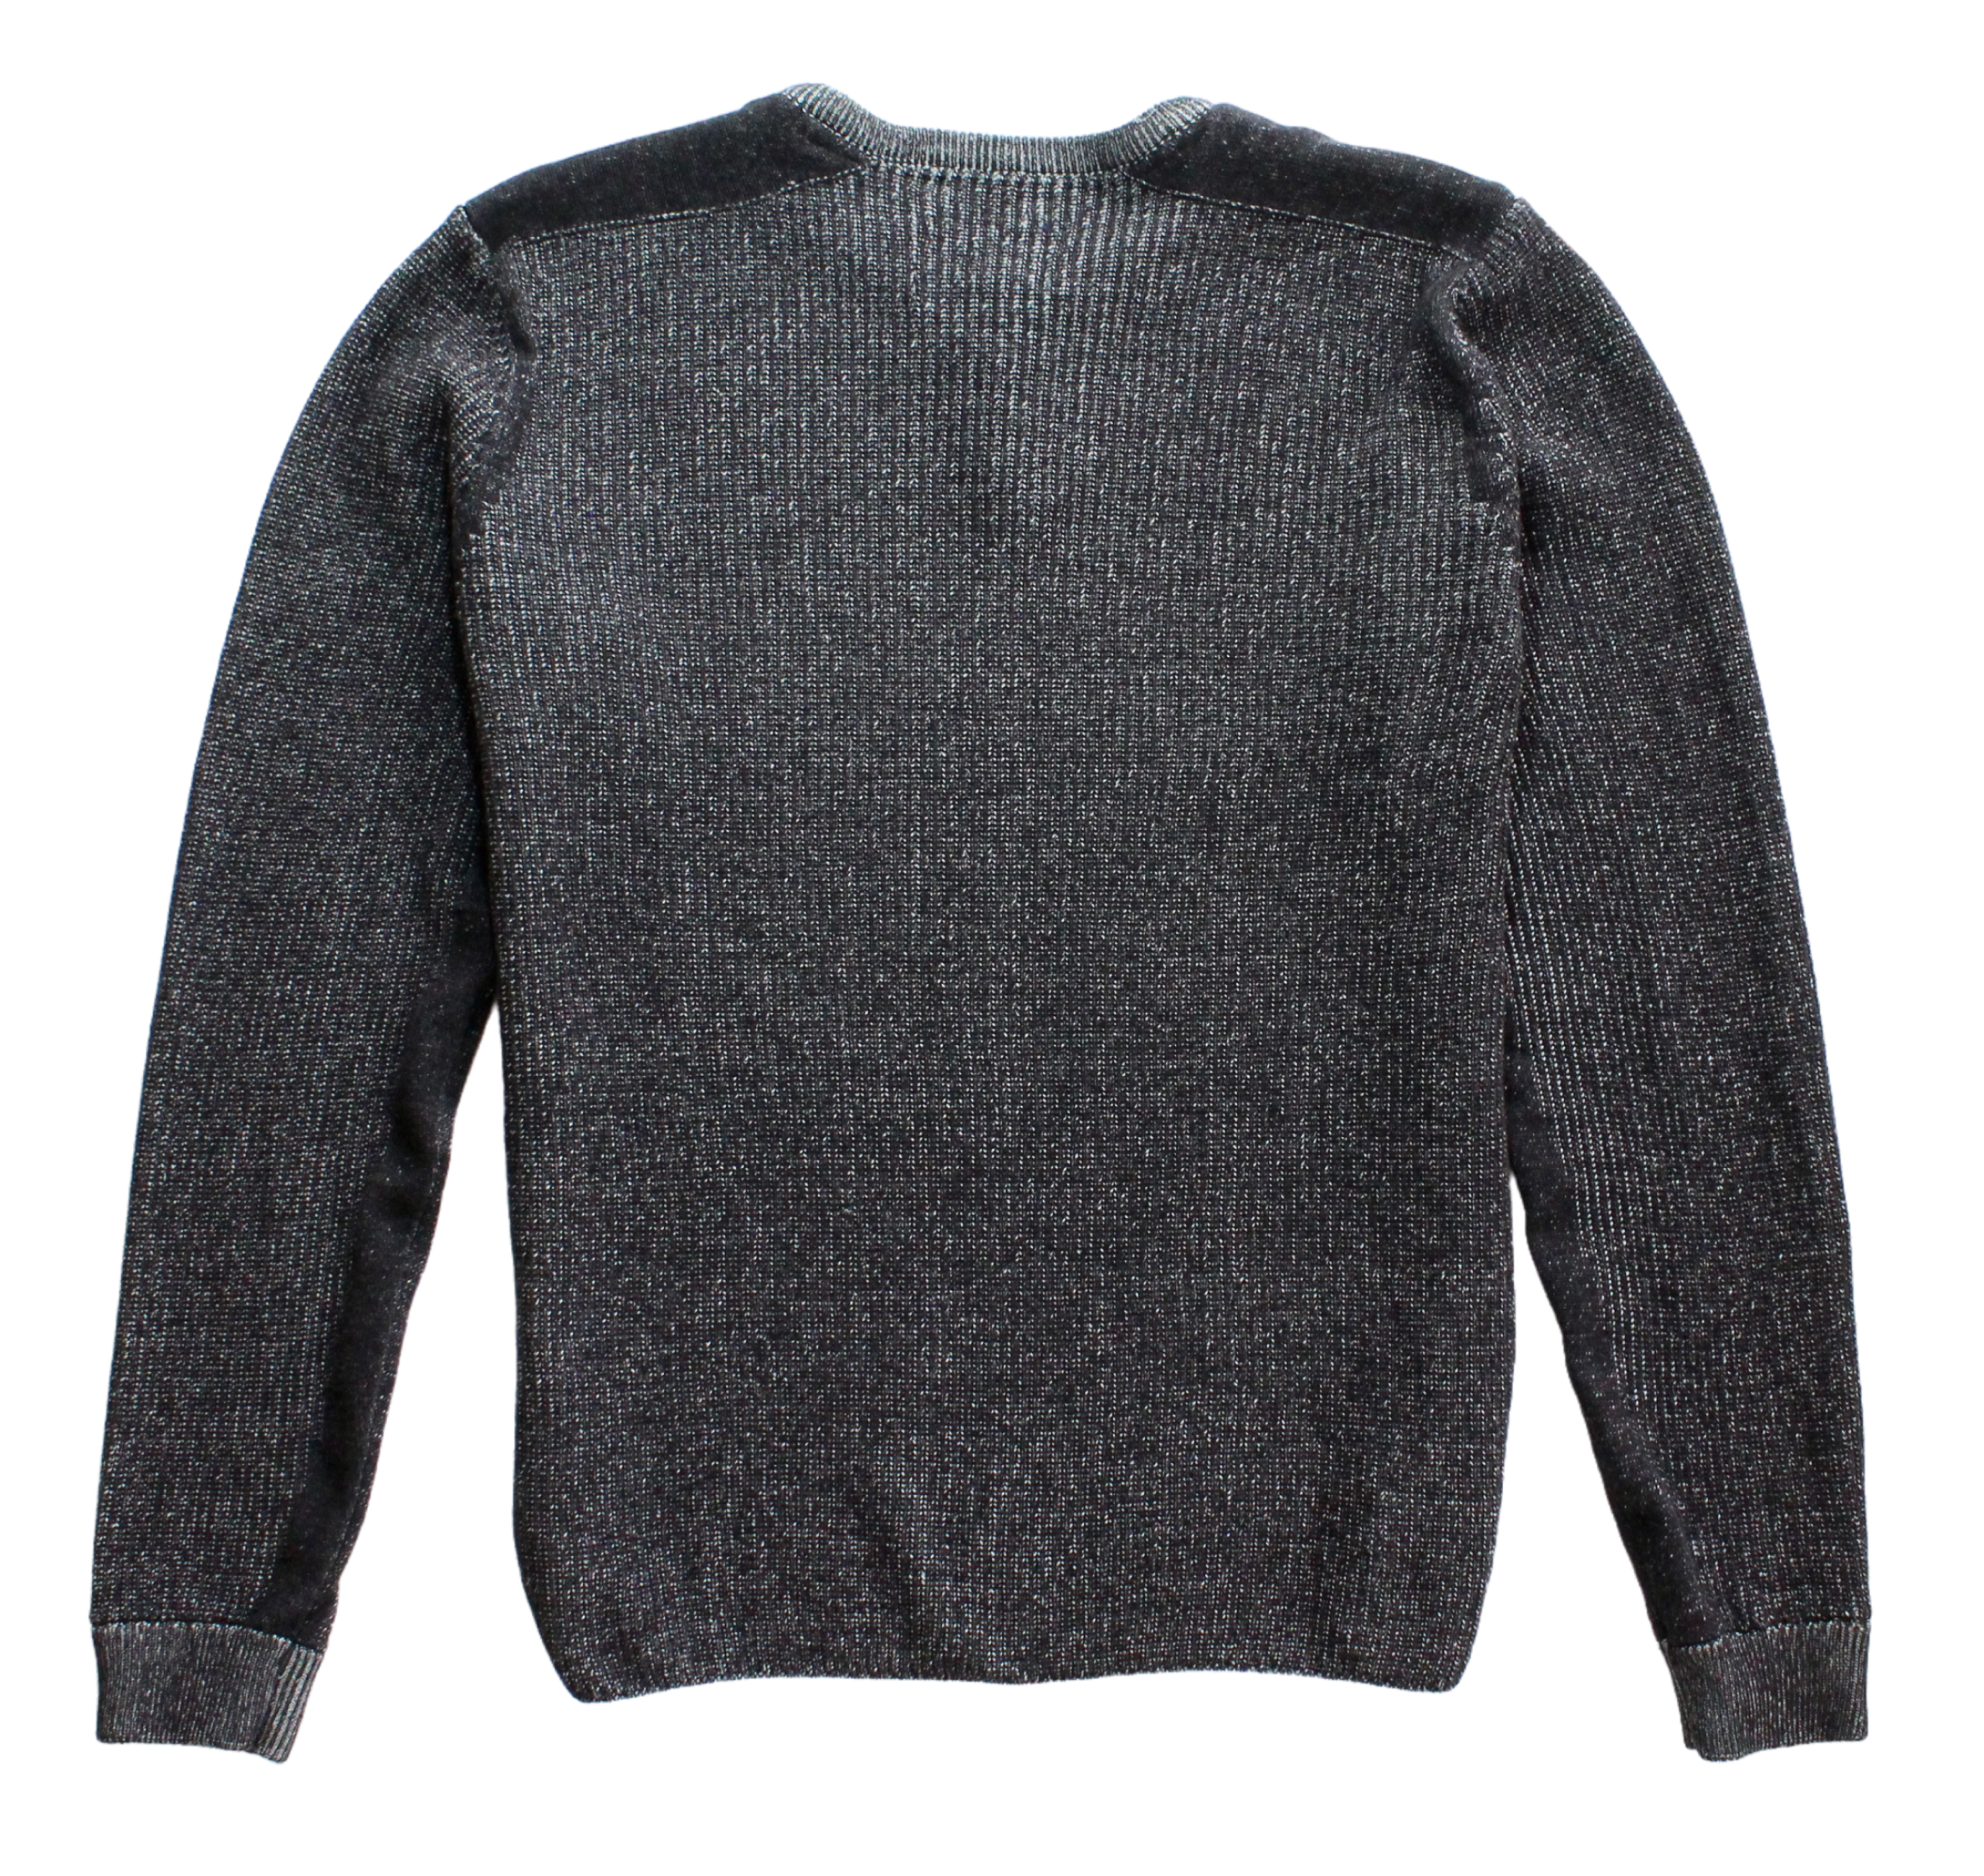 Gavin Bennett's Sweater